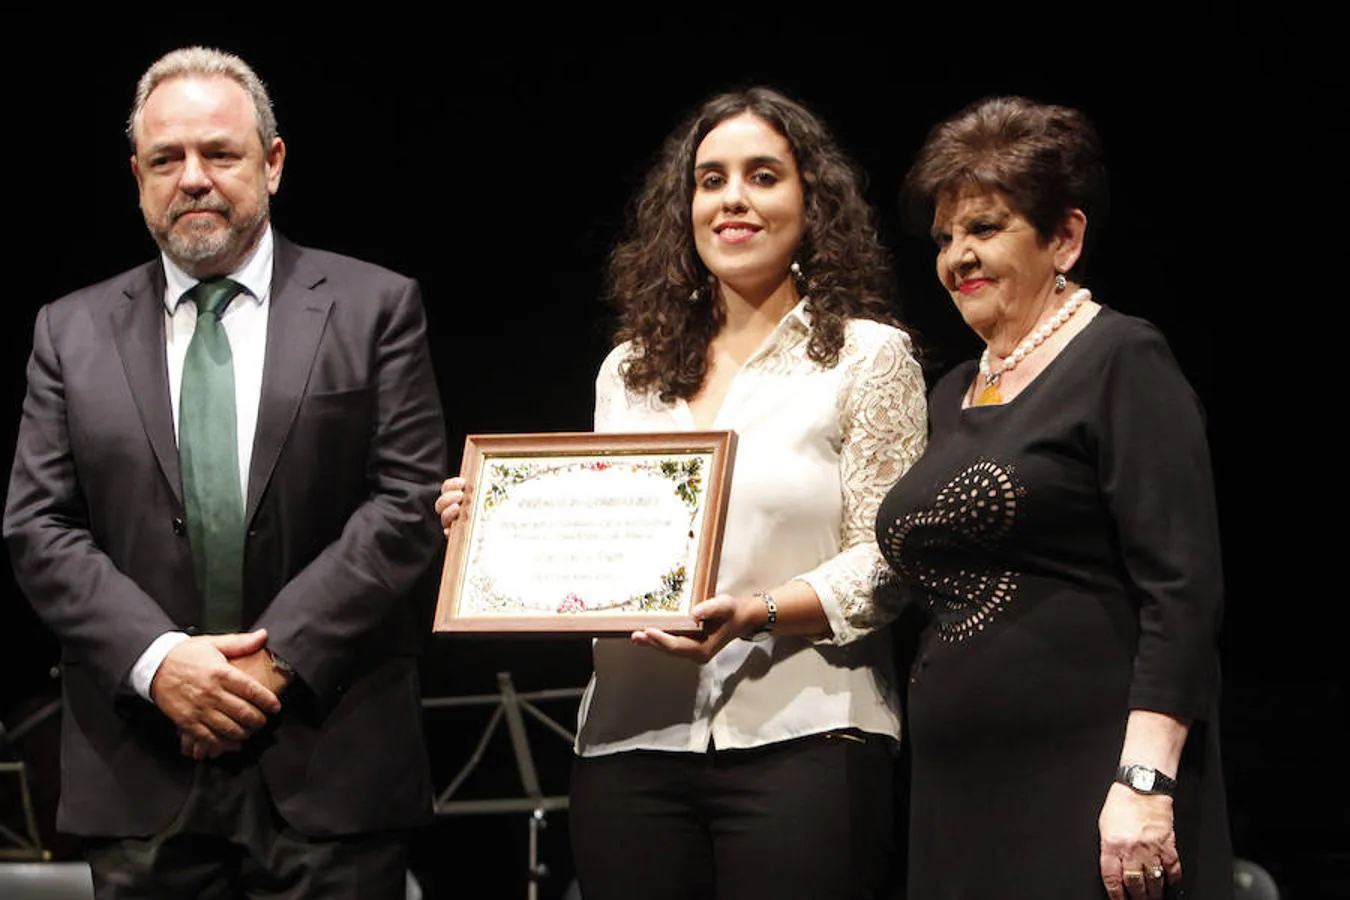 Inés Sandoval, concejal de Toledo, recogió el premio del Centro de la Mujer, en la imagen con el senador Jesús Labrador, portavoz del PP, y Mari Luz Santos